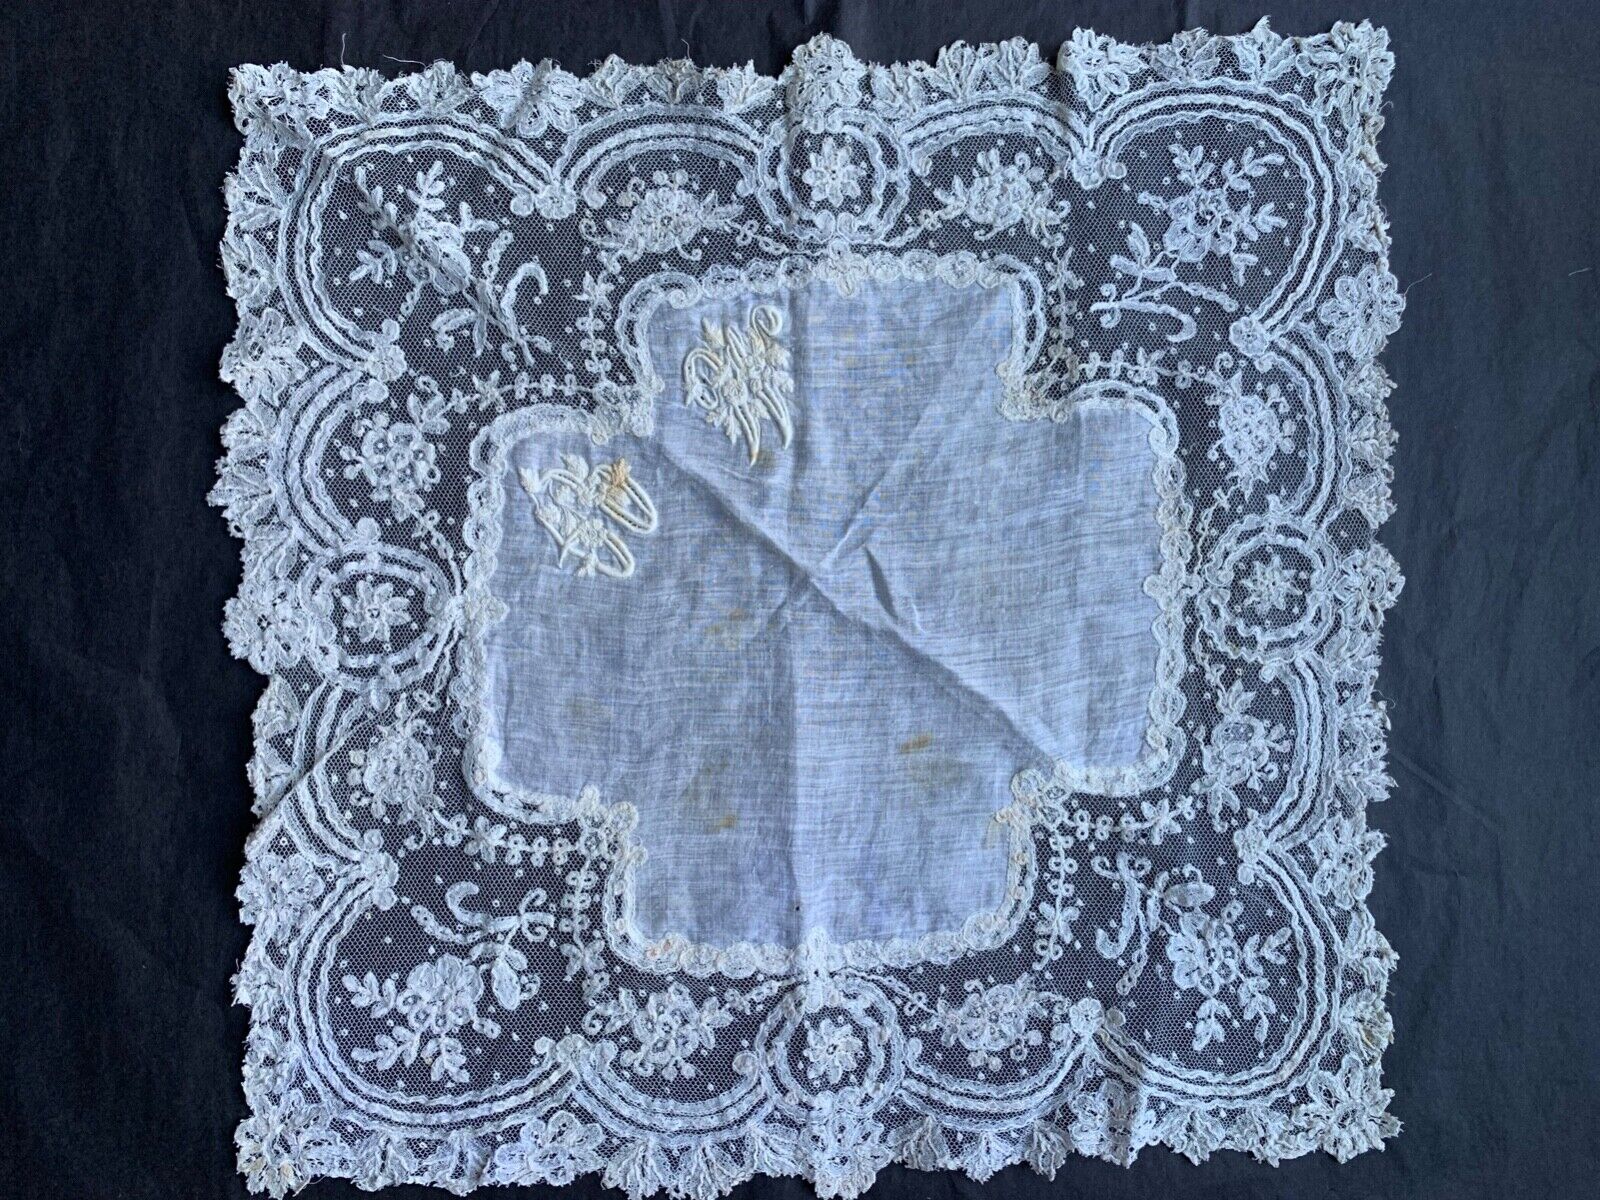 Superb Antique Hand Embroidered Lace handkerchief - Point de Gaze Lace 12 1/2\